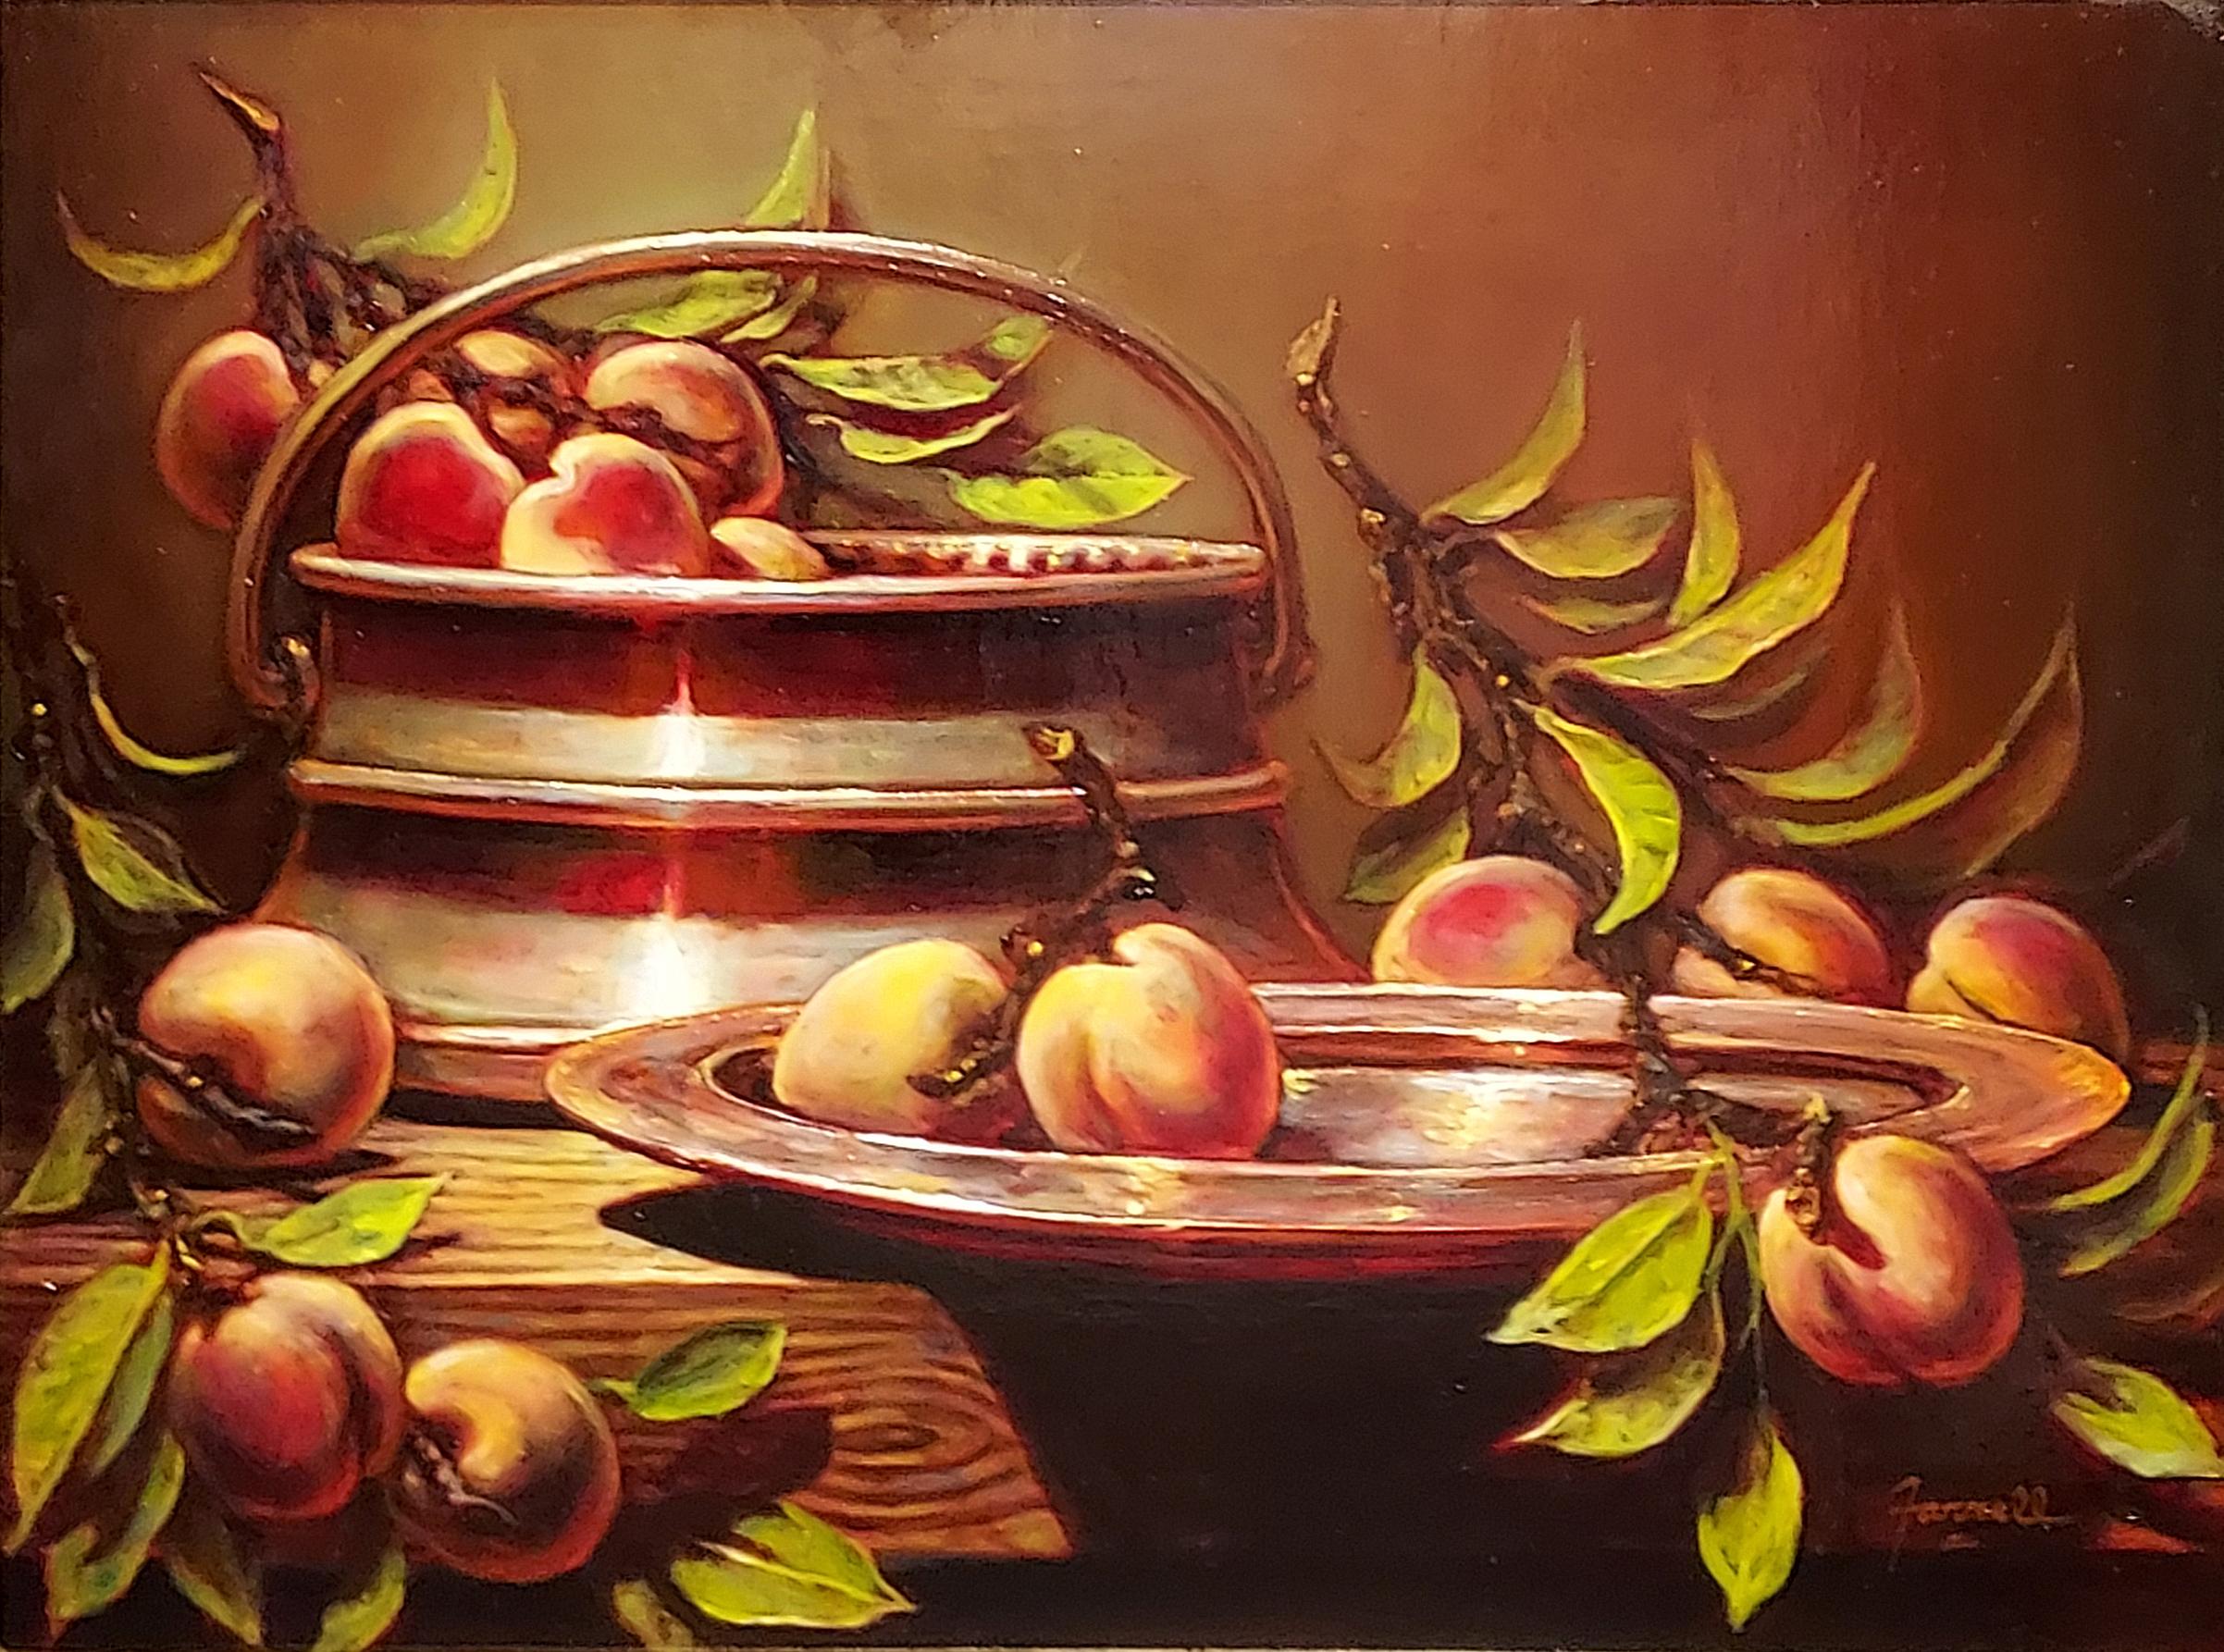 "The Peach Harvest", est une peinture à l'huile sur toile de 18x24 de l'artiste Sean Farrell. Il s'agit d'un arrangement de pêches fraîchement récoltées, encore sur la tige avec leurs feuilles, qui débordent d'un récipient en cuivre. Leurs douces